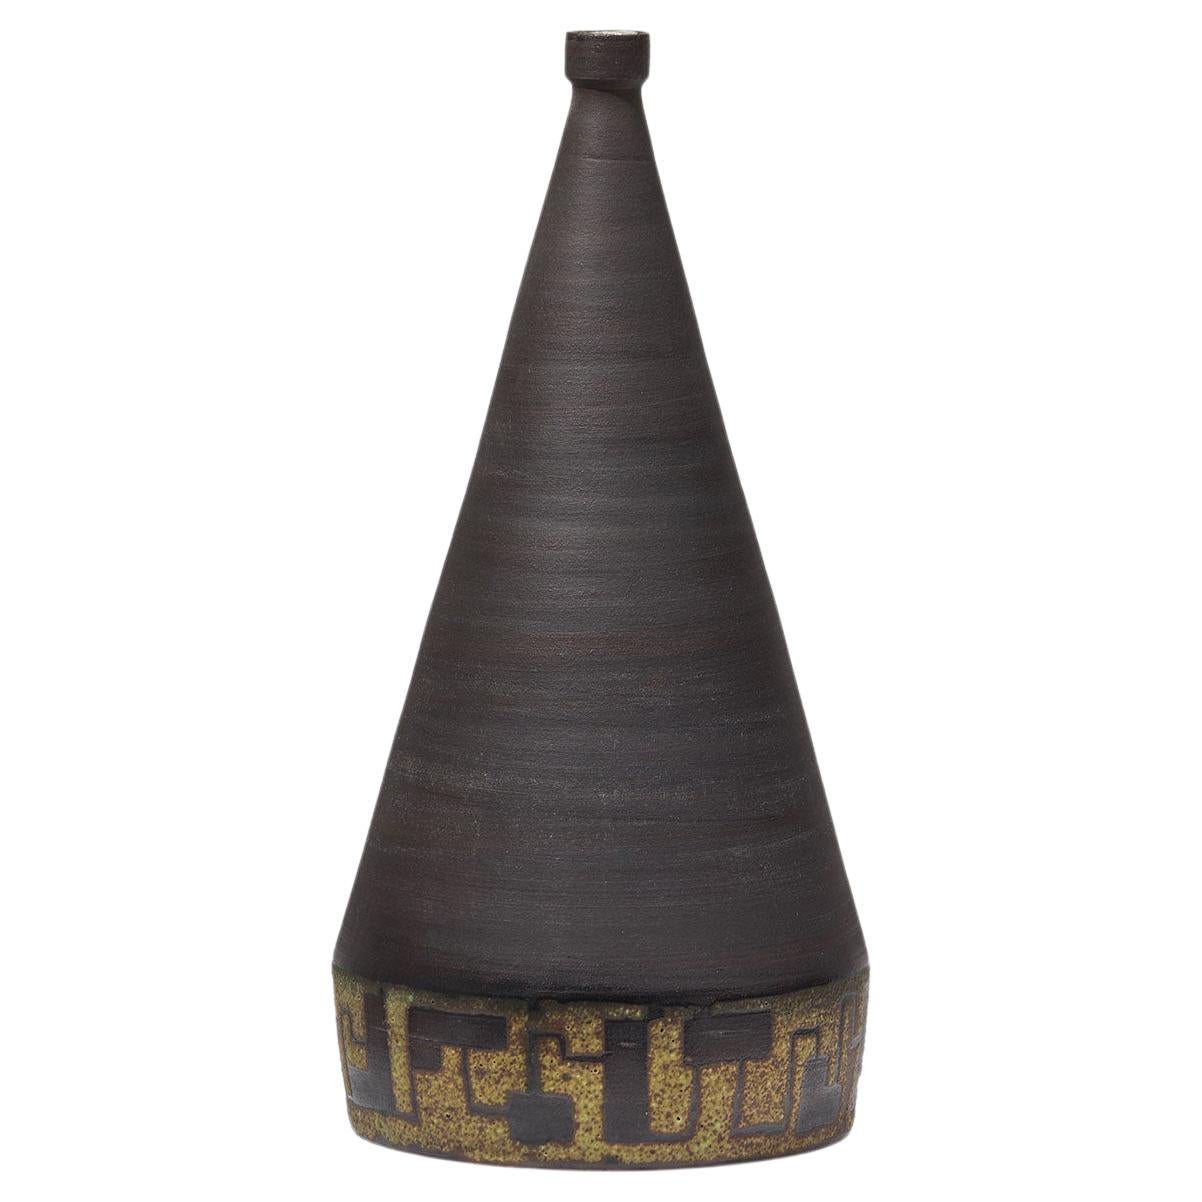 Signed Ceramic Vase, 1963 with Black Glaze Finish